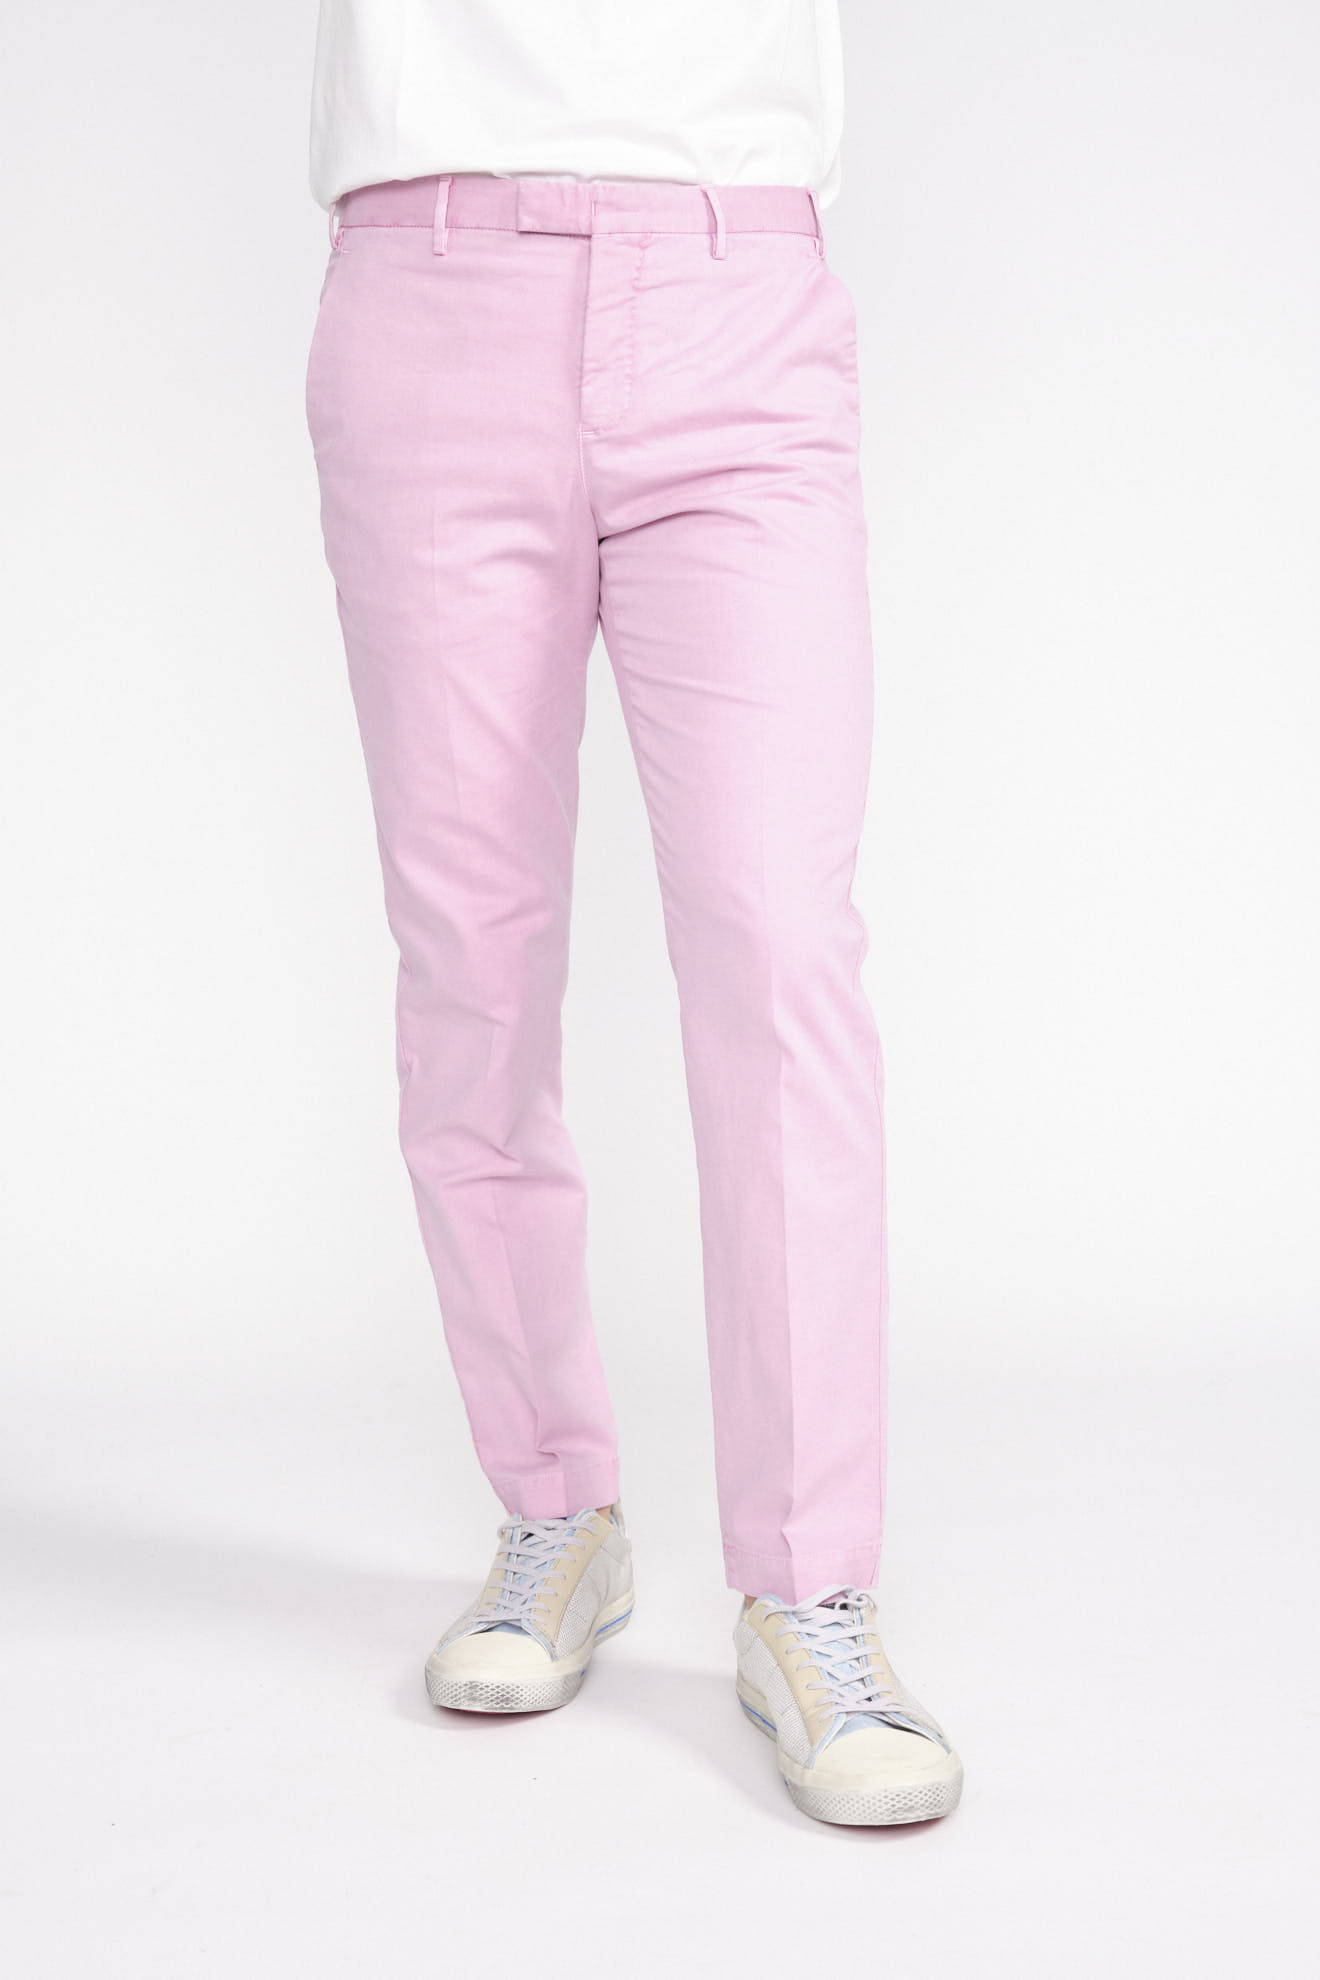 PT Torino Pantaloni stile chino con piega in cotone blu 48